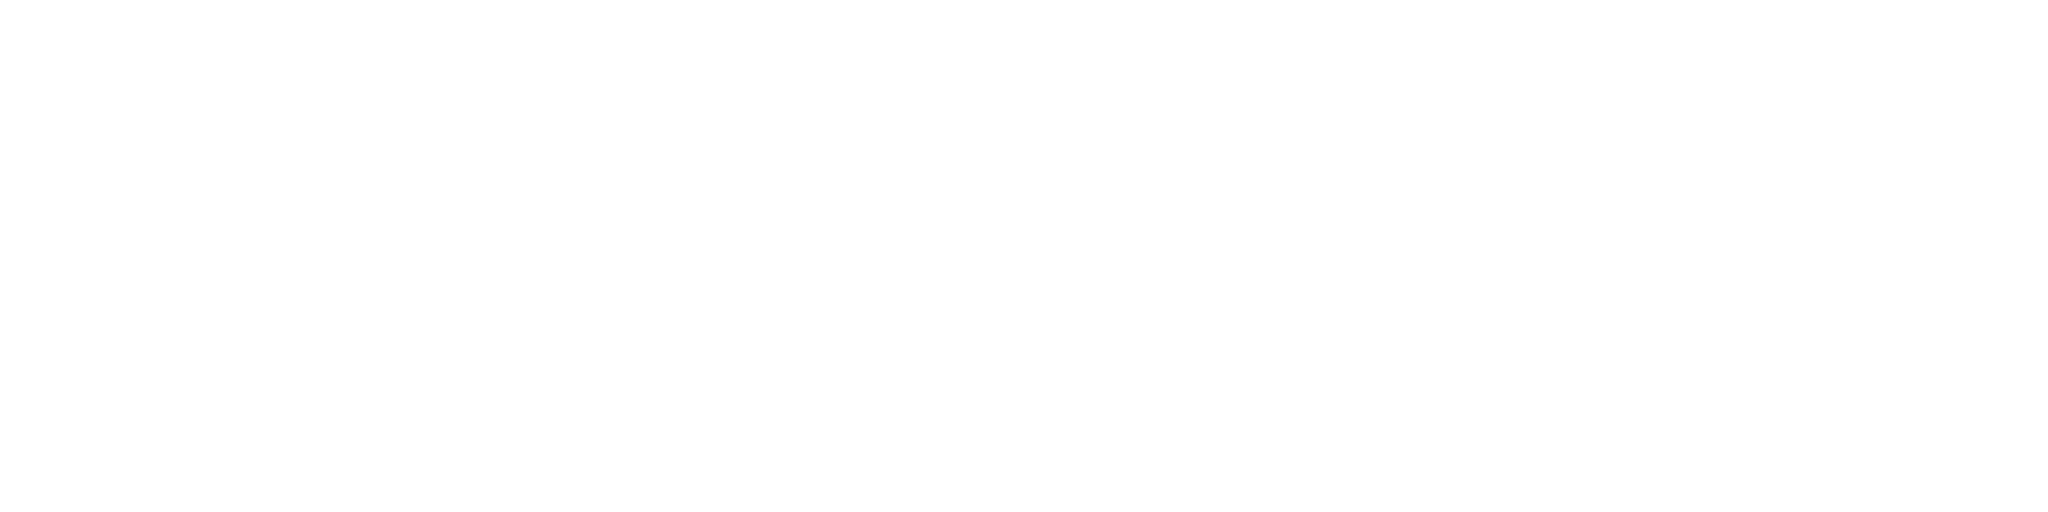 Portal shihtzu.com.pl